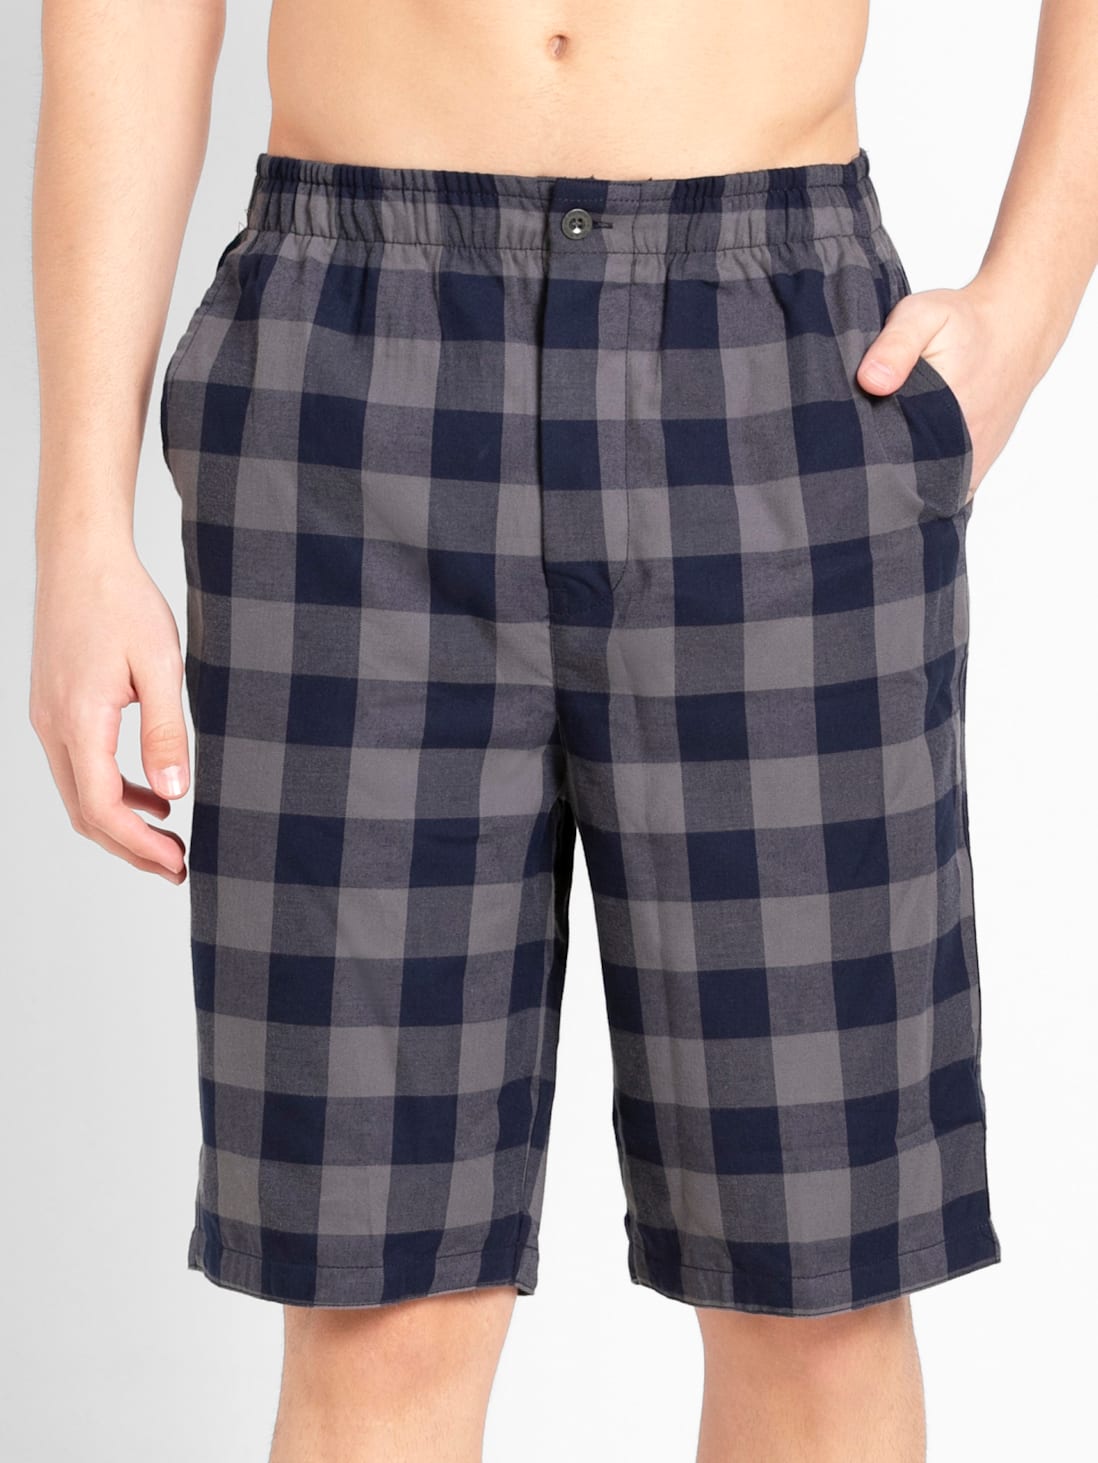 Jockey Assorted Check Pyjama for Men #9009, Men Pajama, Men pj set, Night  Pajama for Men, पुरुषों का पजामा, मेन्स पजामा - Zedds, New Delhi | ID:  2852731768873